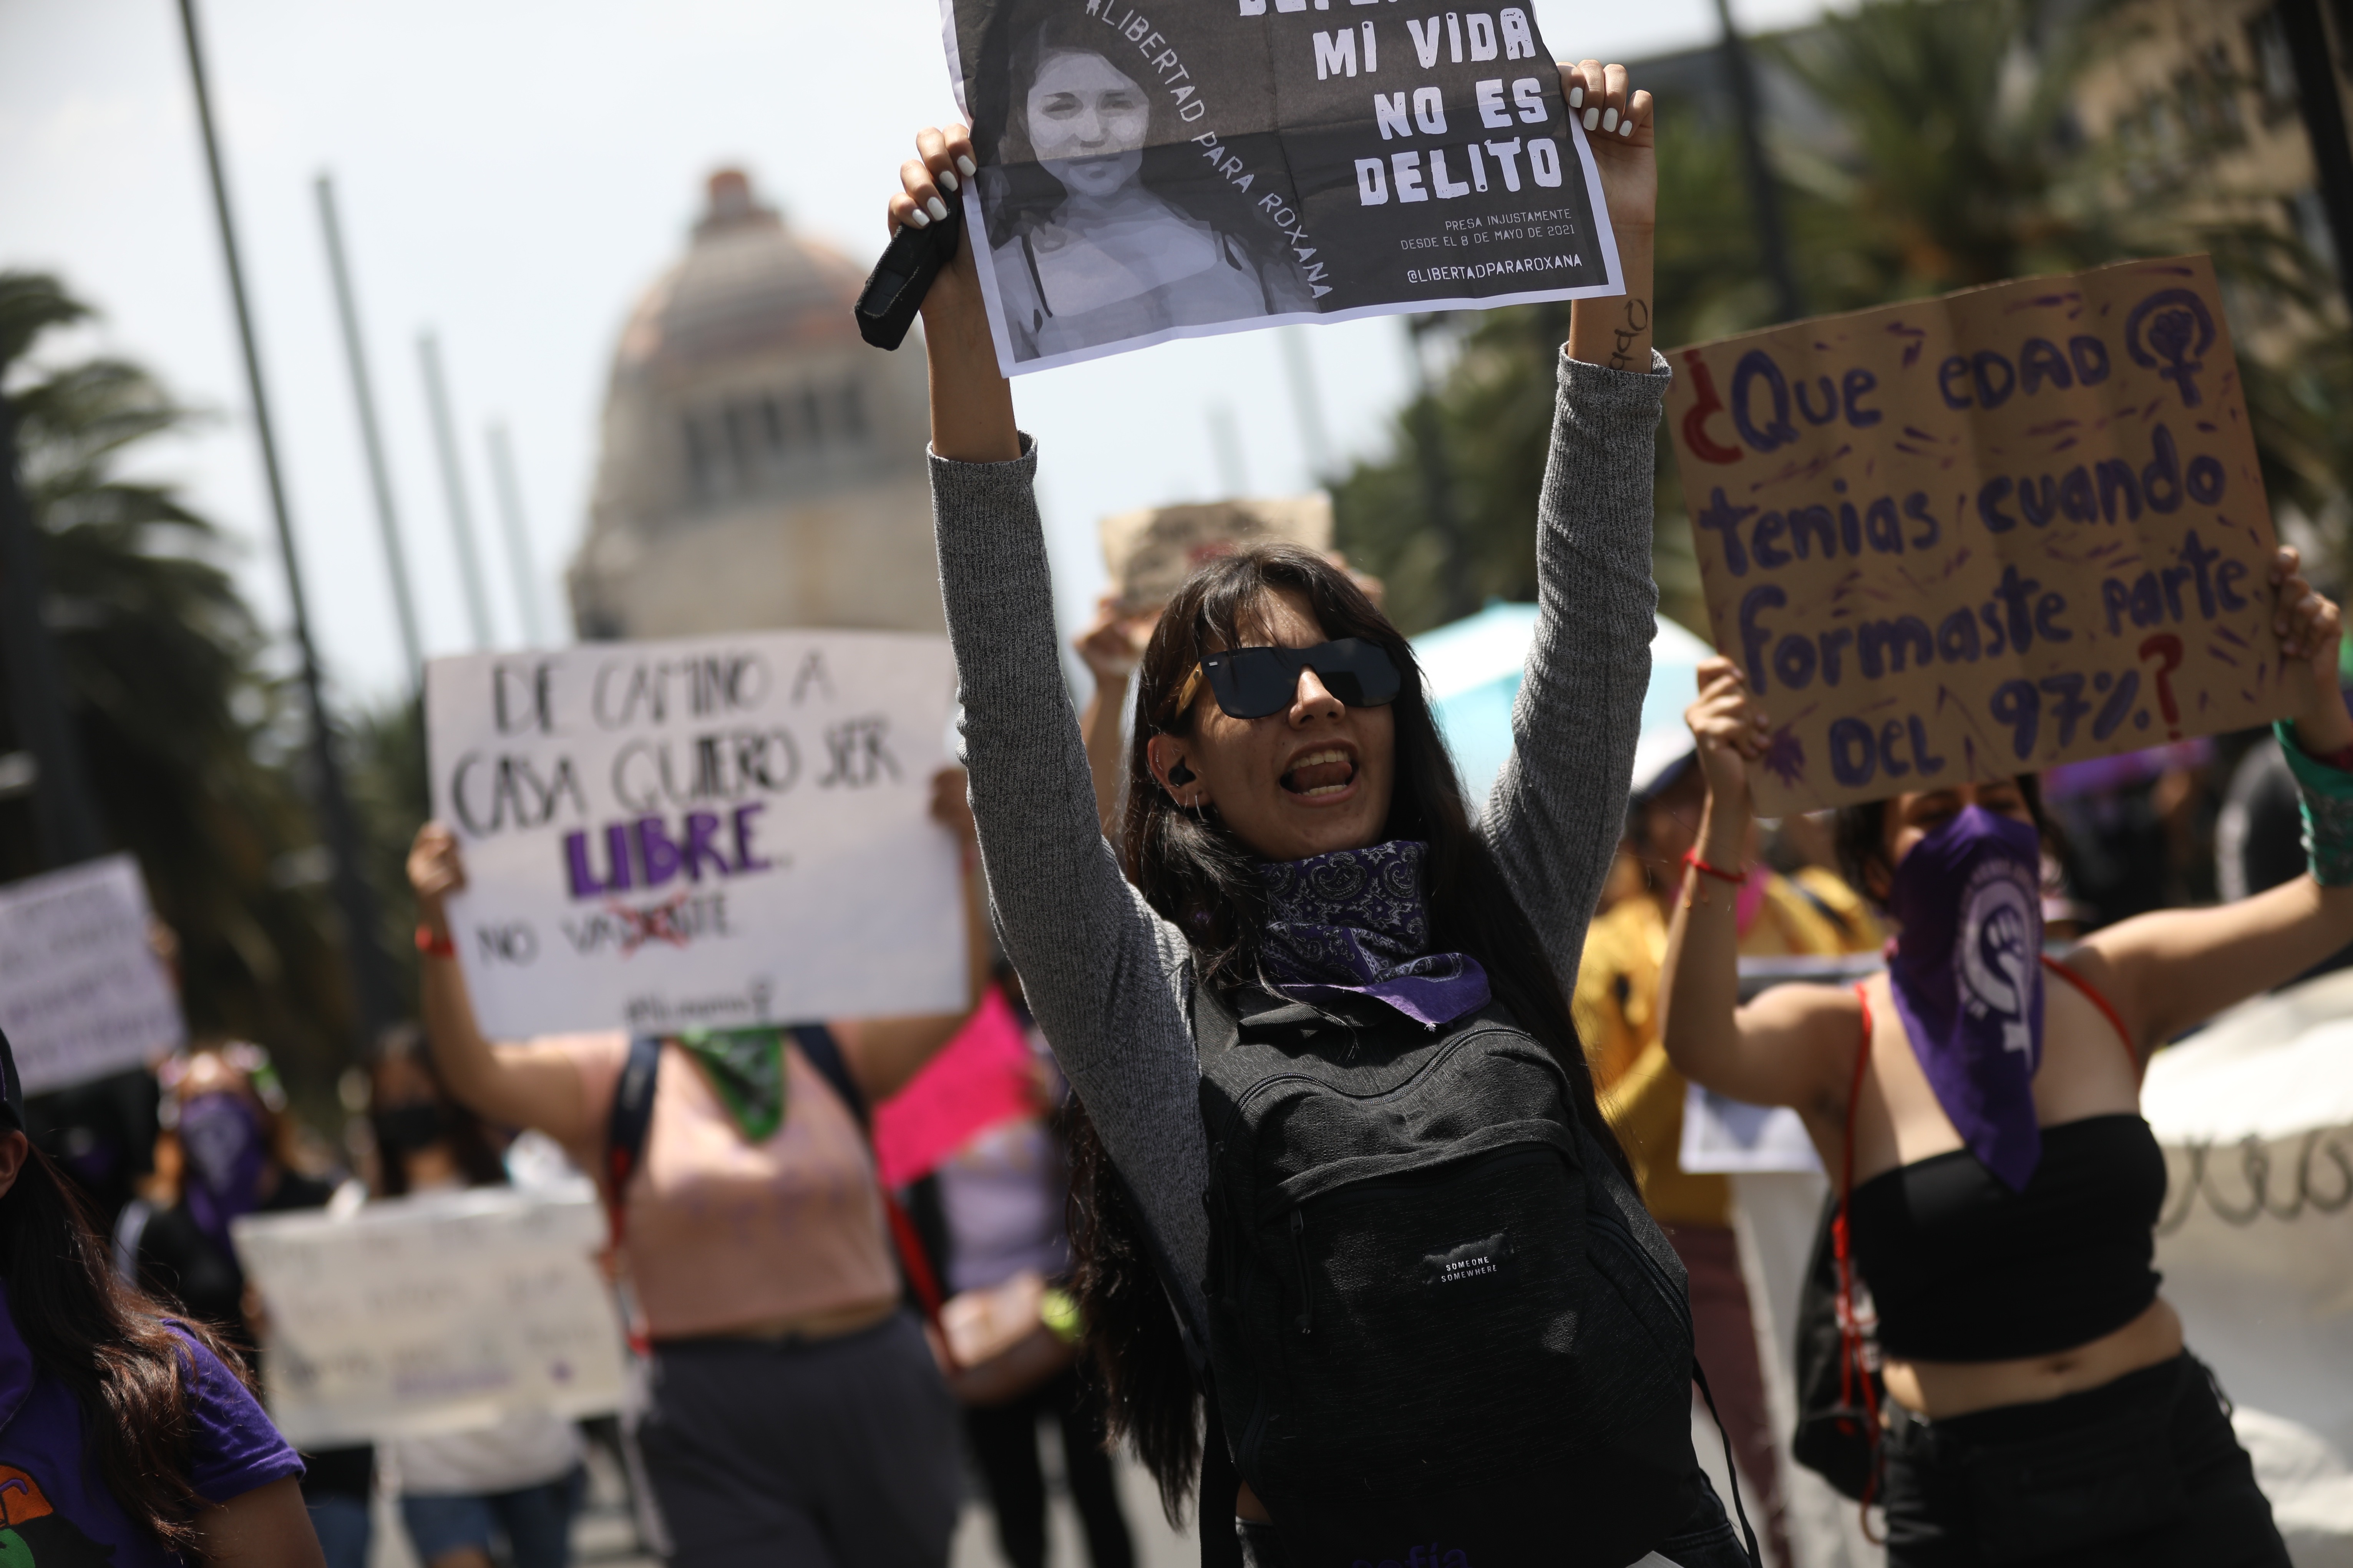 Marcharon pidiendo el fin de oleada de desapariciones en México